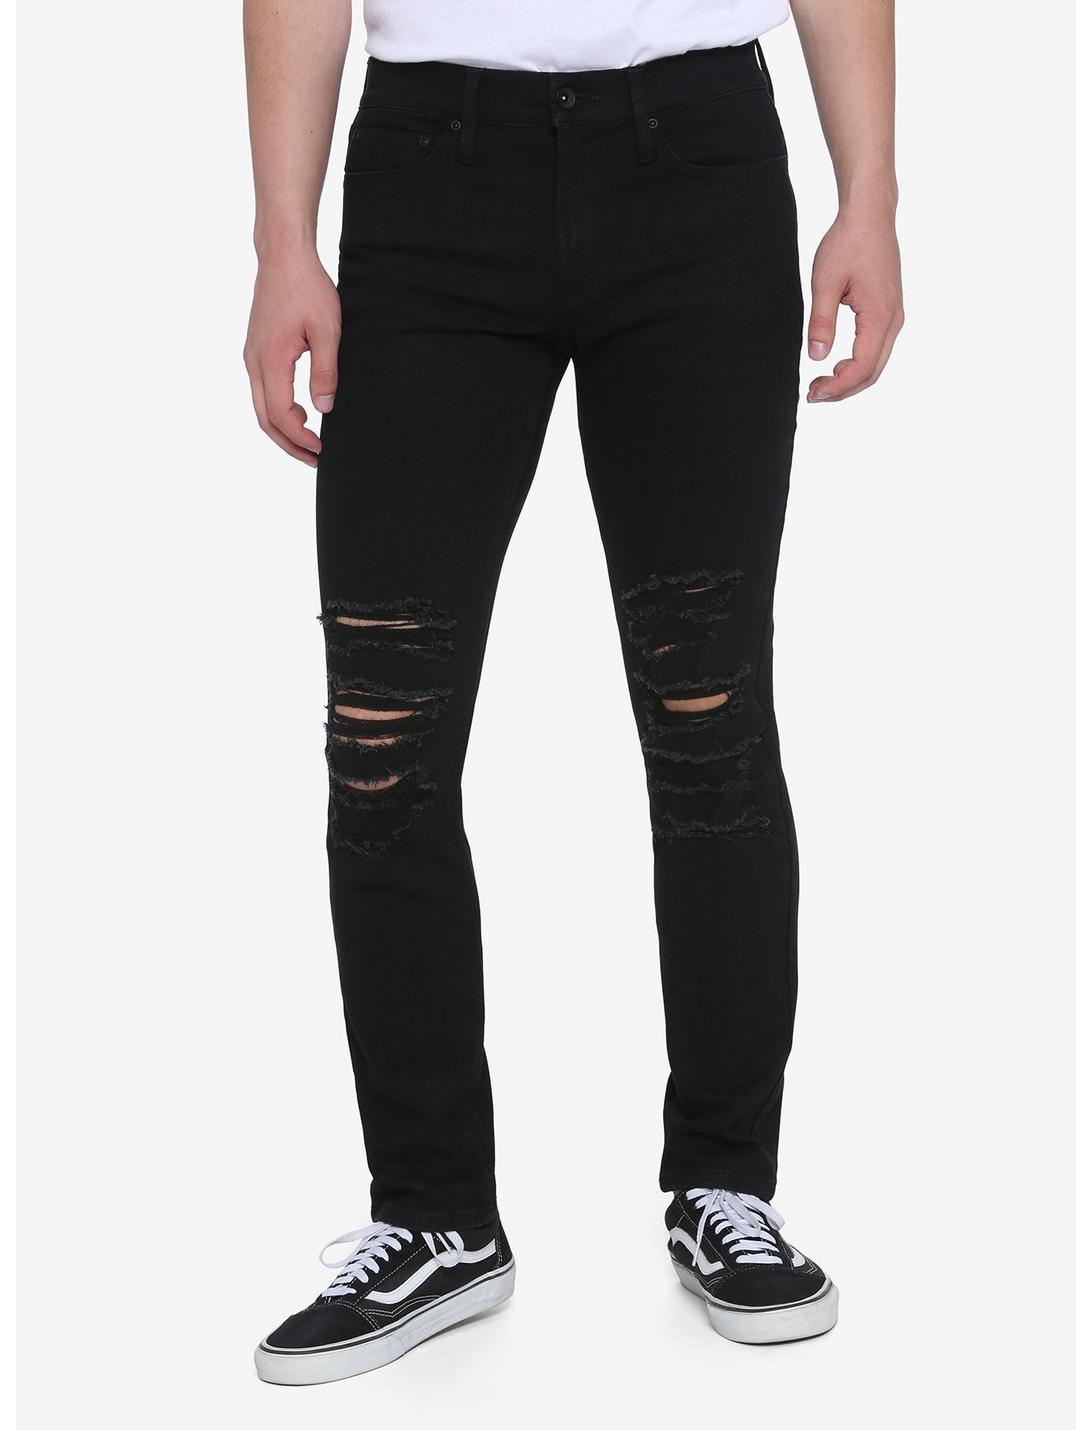 HT Denim Black Destructed Skinny Jeans, BLACK, hi-res